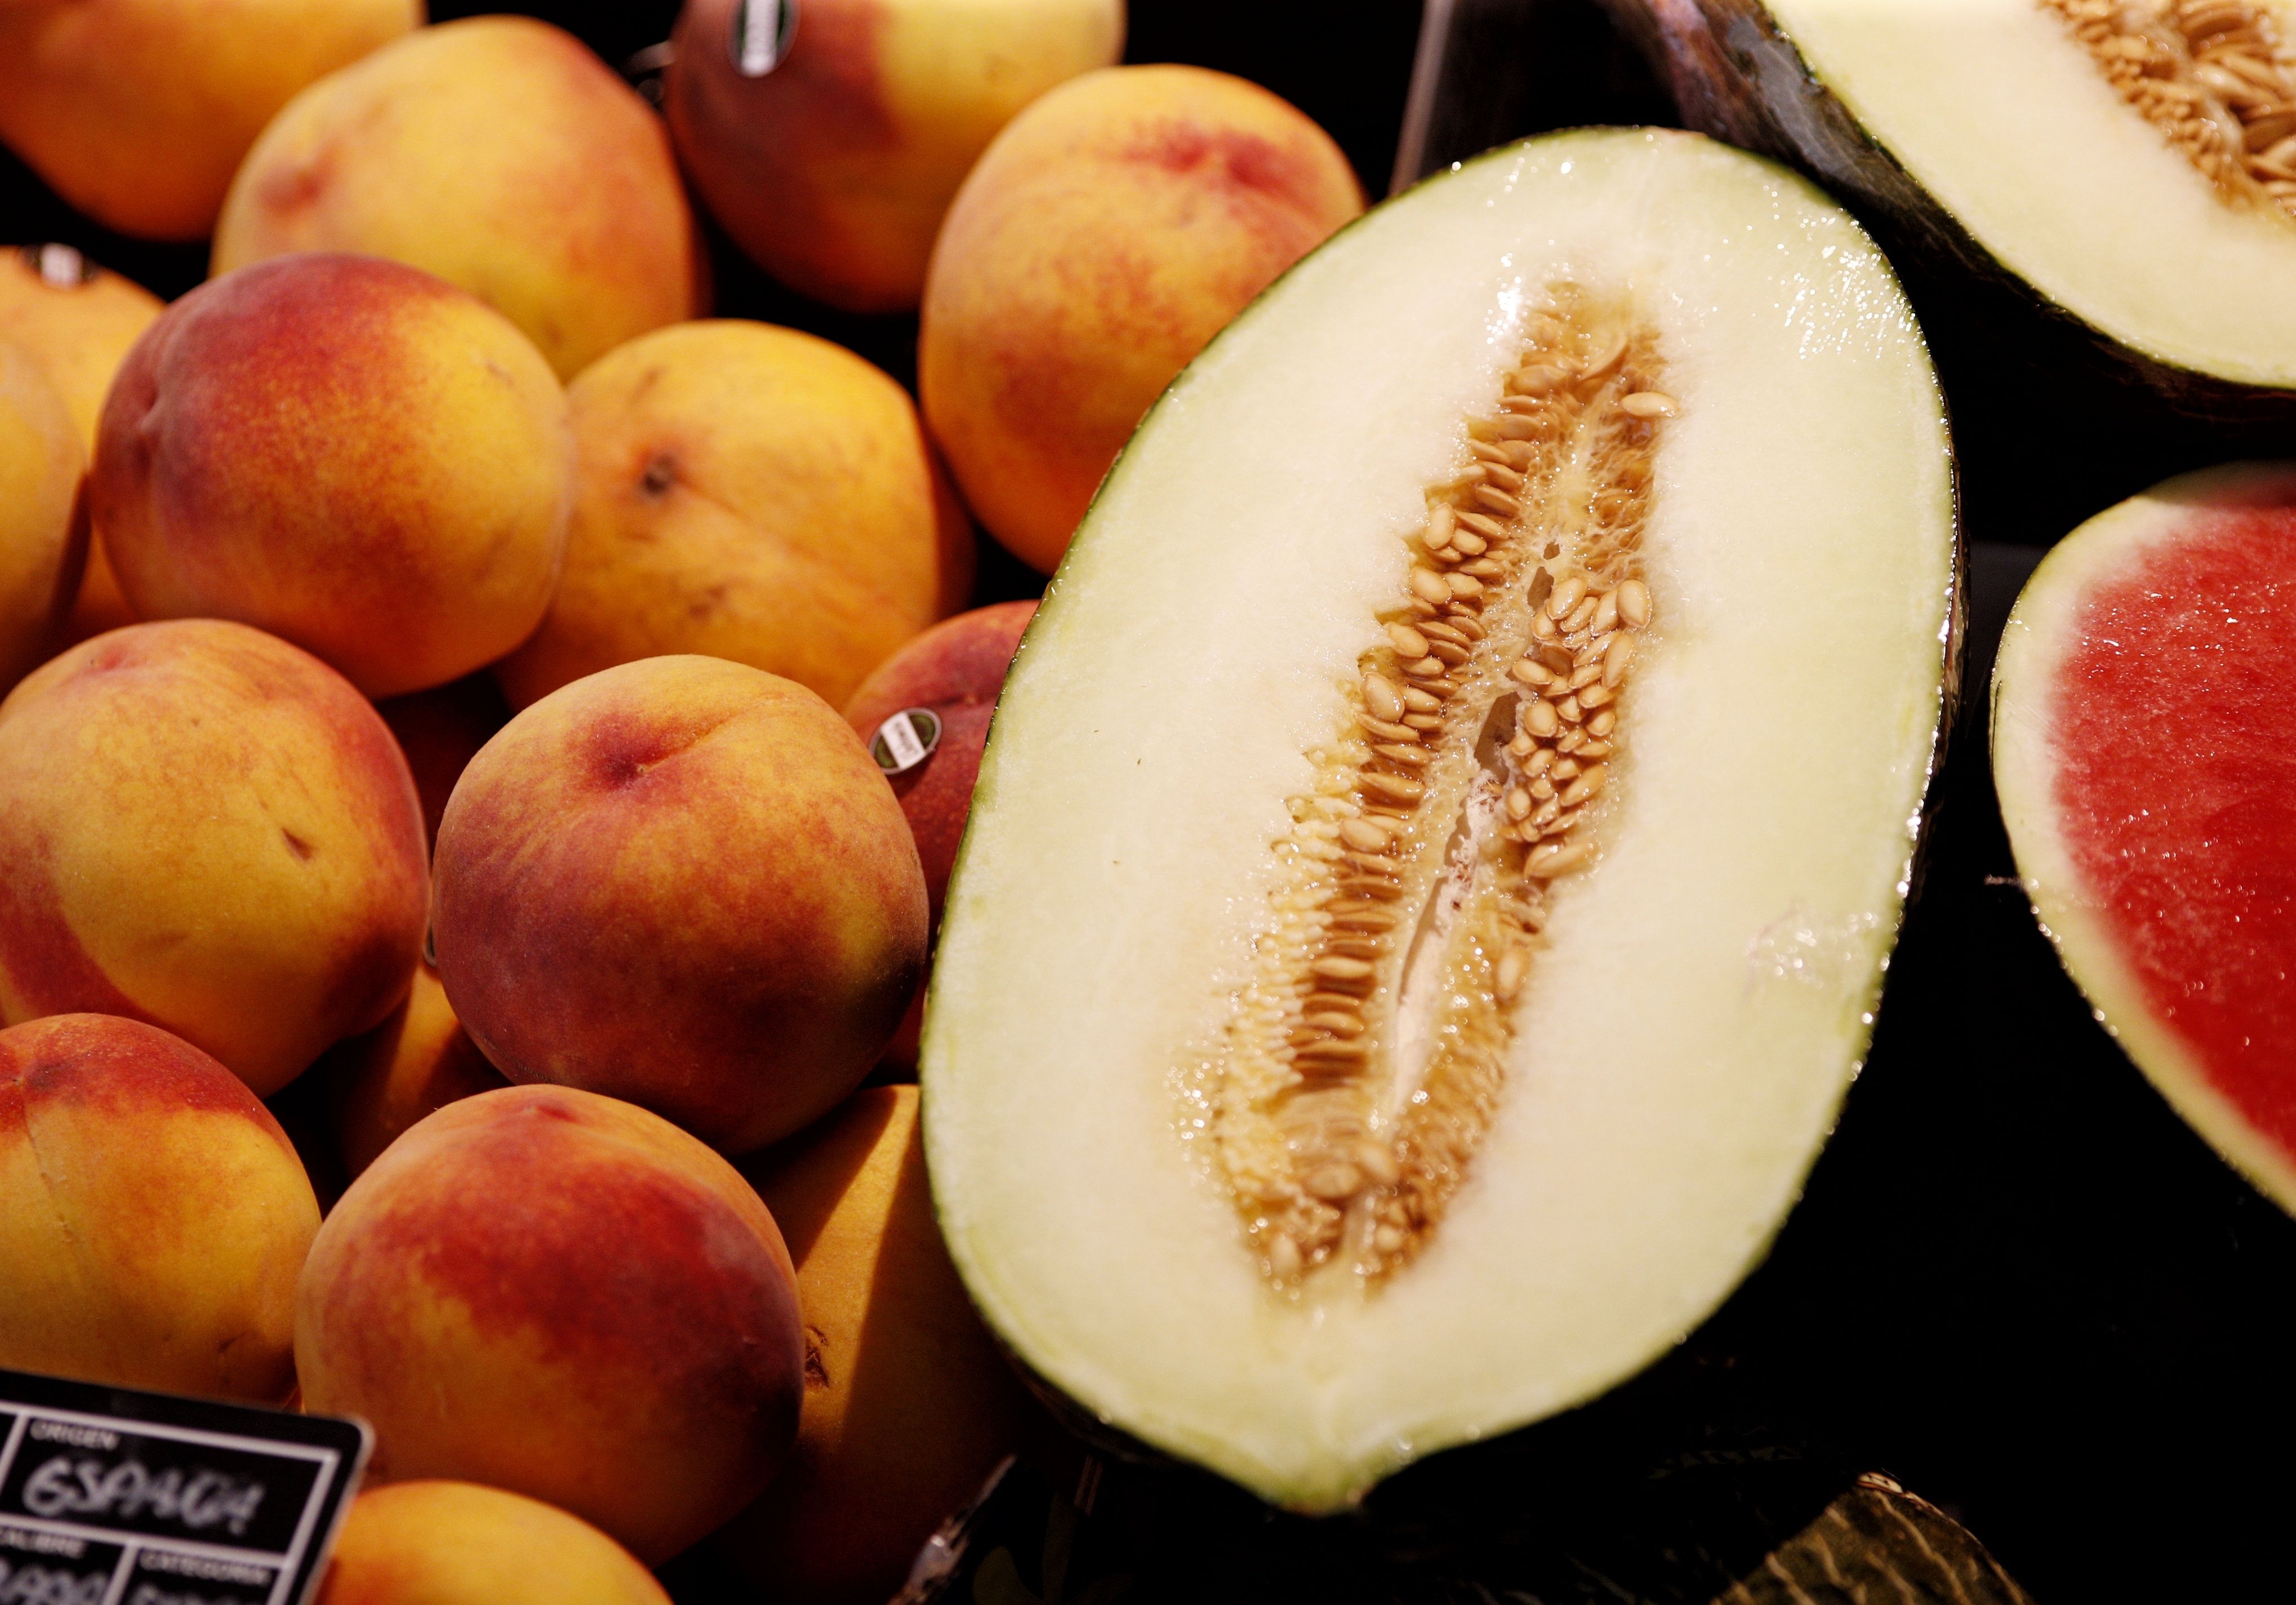 Atención al etiquetado de melones y sandías en los supermercados: denuncian que es "engañoso"